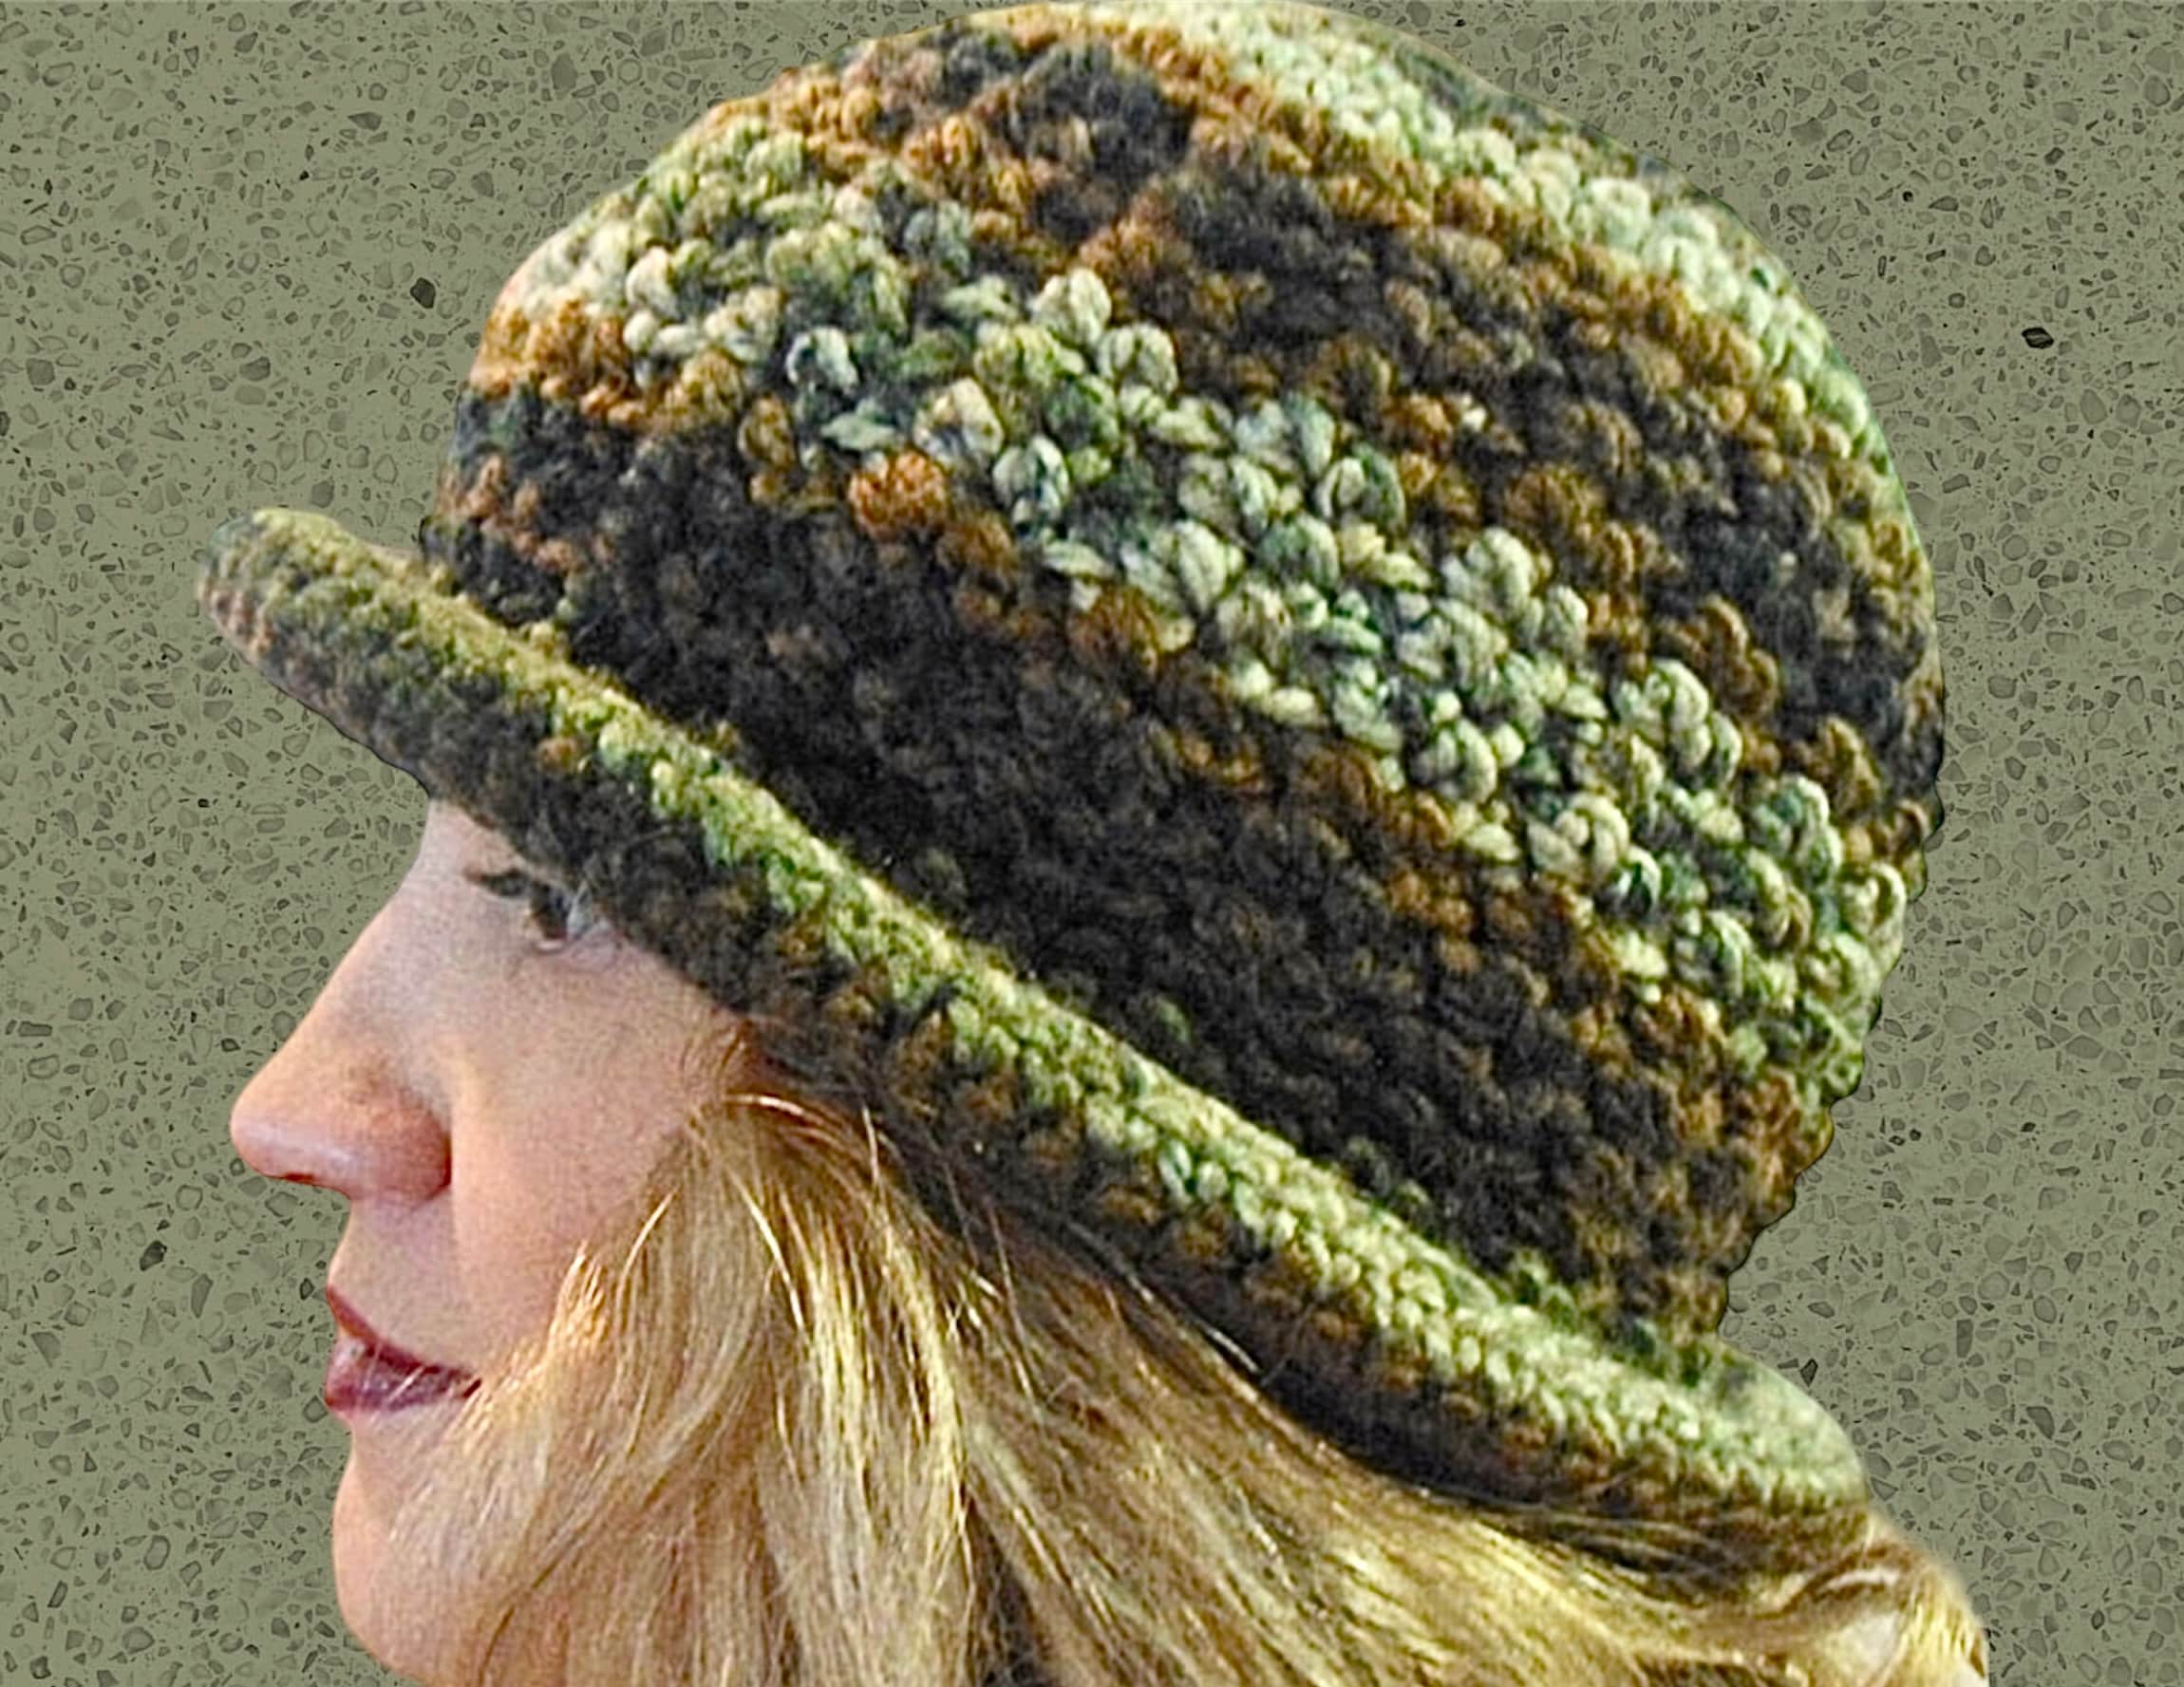 ePattern: Twist Brim Loom Knit Hat